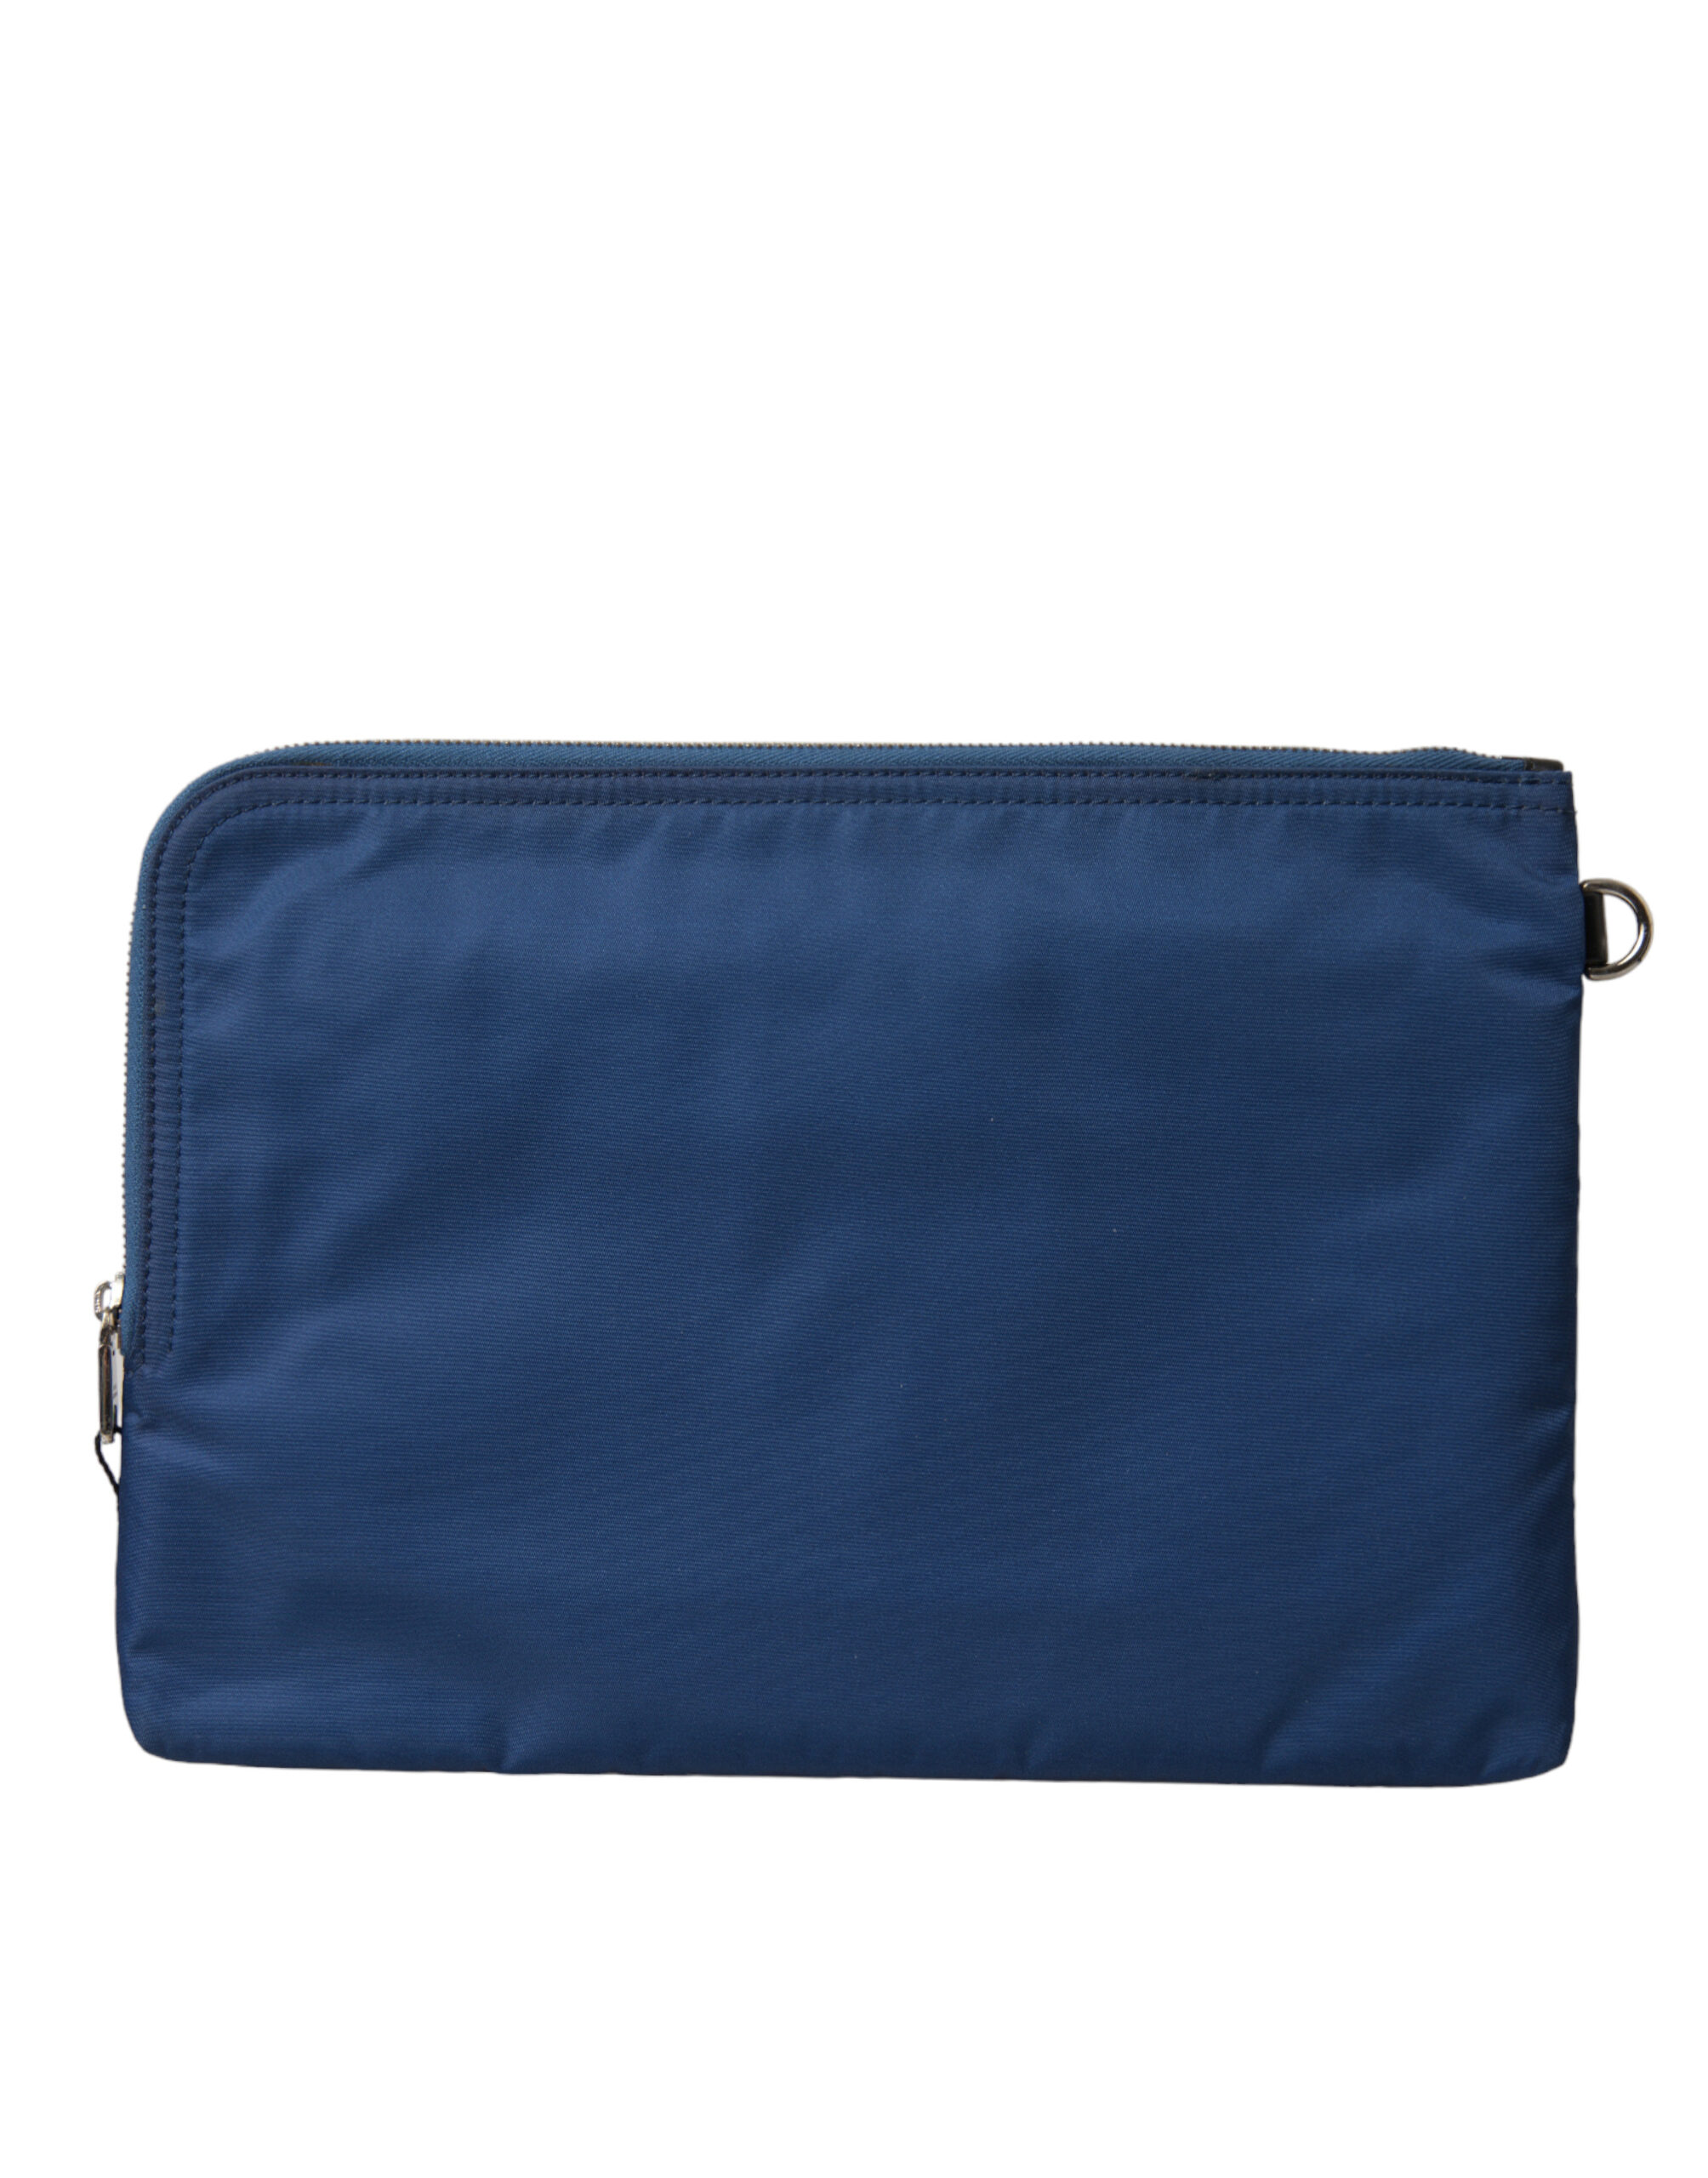 Blue DG Milano Print Nylon Pouch Clutch Men Bag